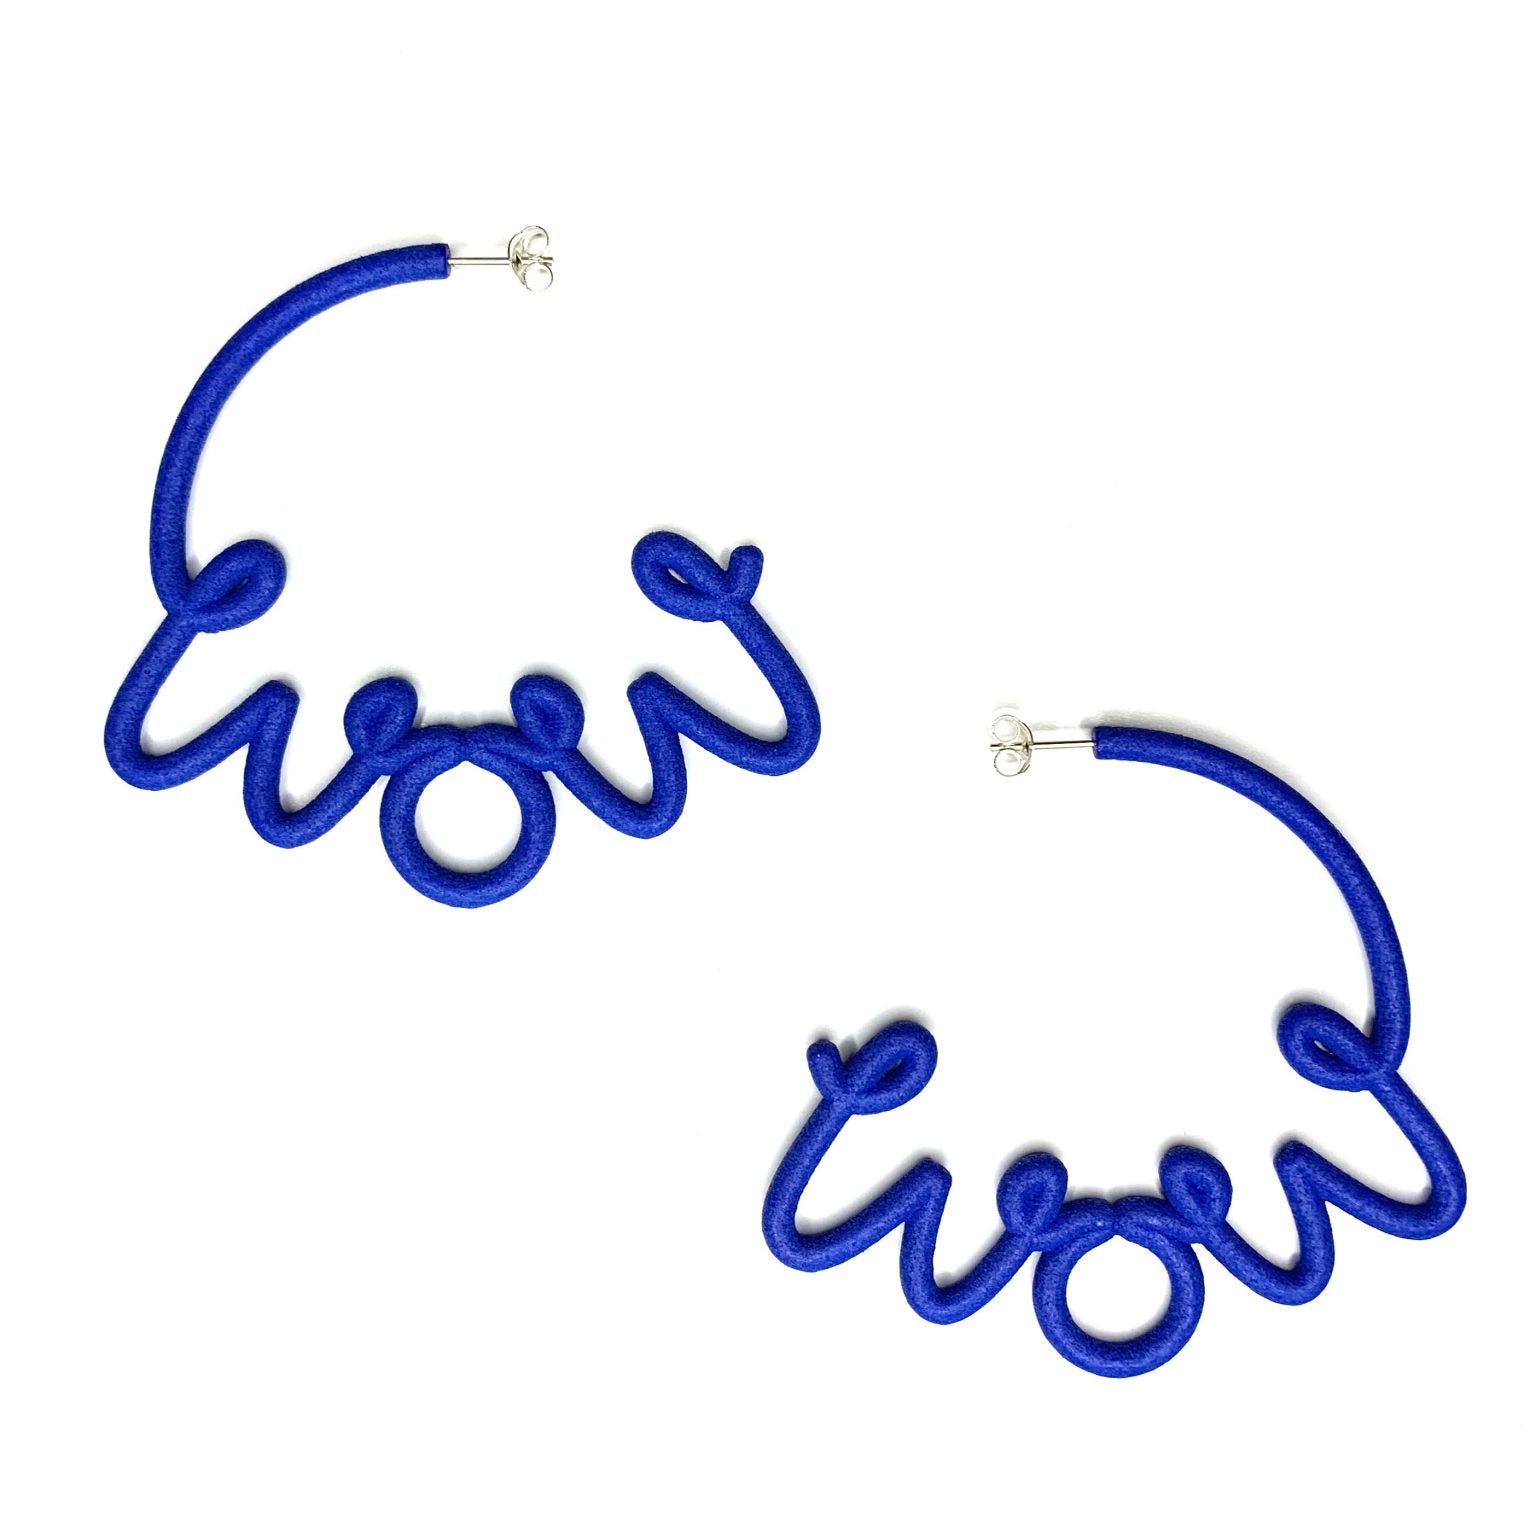 This is ‘WOW’ hoop earrings on model